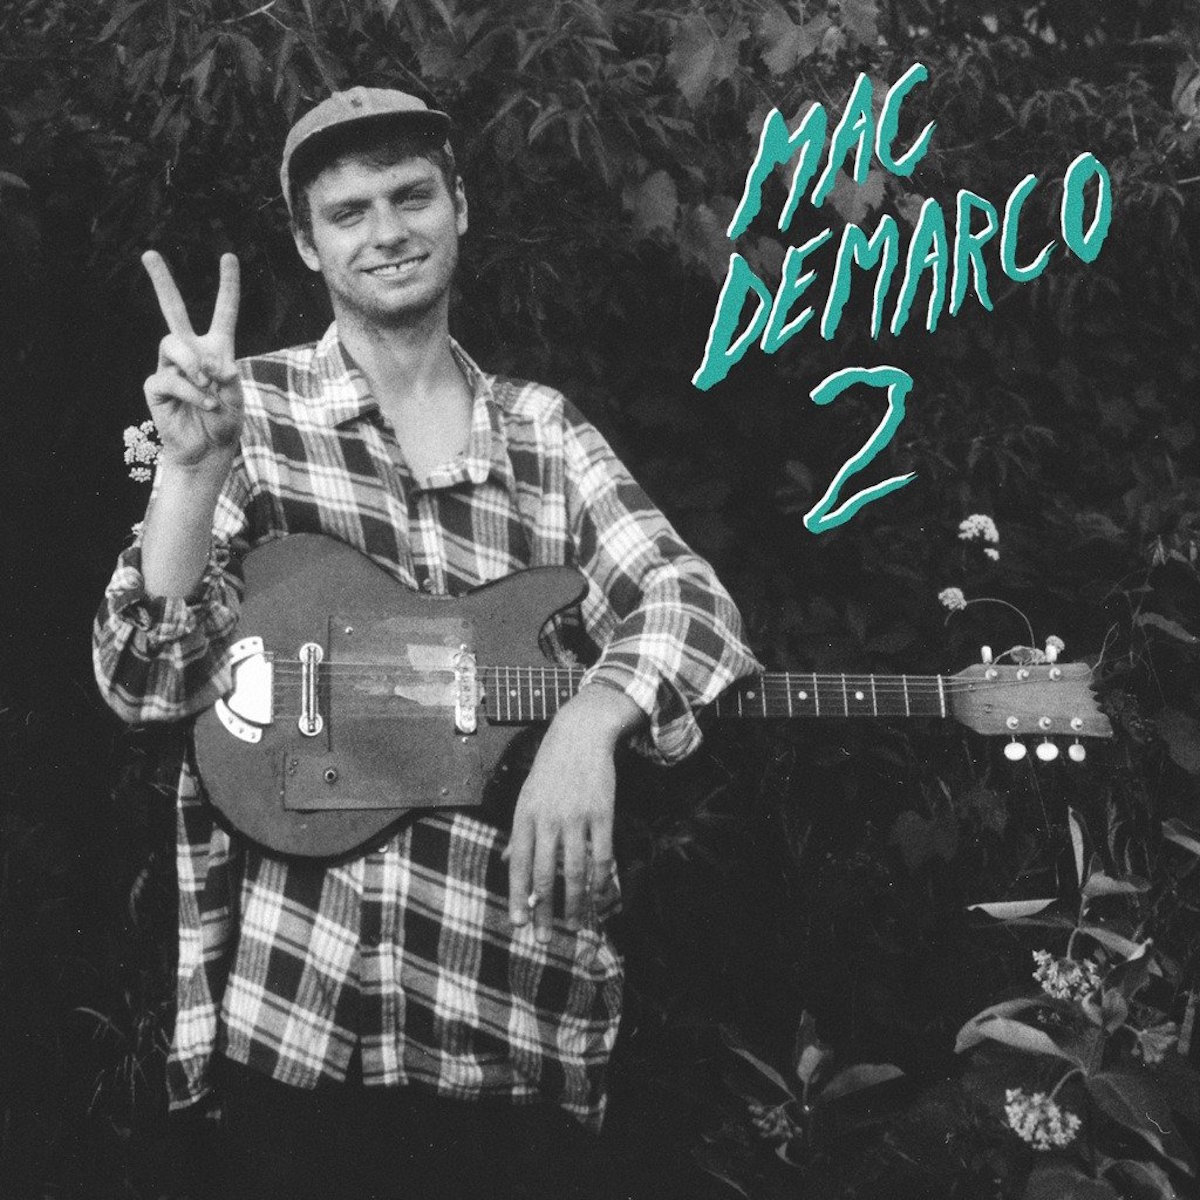 Mac demarco songs